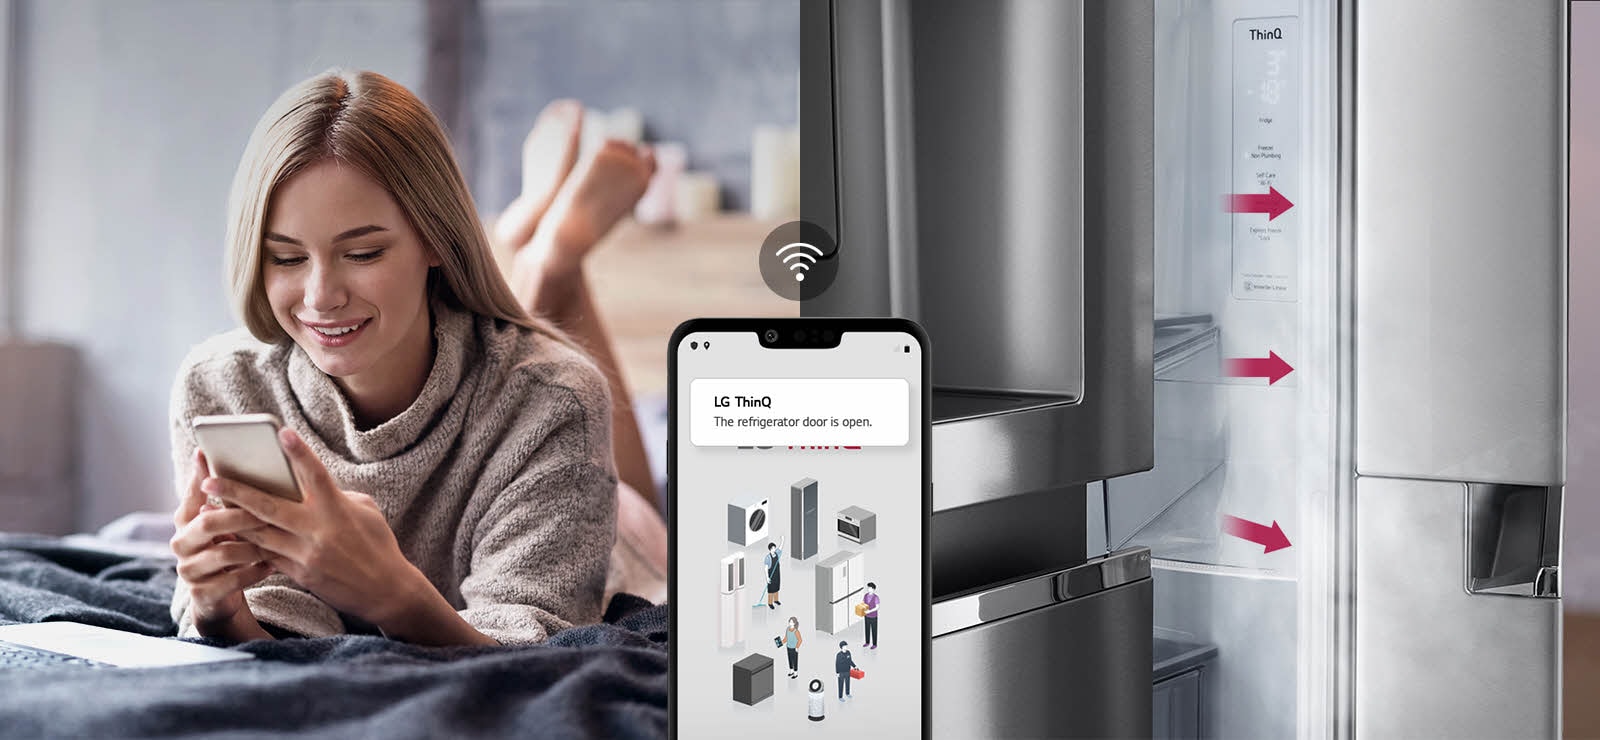 Egy nő hever az ágyon, és egy képen a telefonja képernyőjét nézi. A második képen látható, hogy a hűtőszekrény ajtaja nyitva maradt. A két kép előterében a telefon képernyője látható, amelyen az LG ThinQ alkalmazás értesítései és a Wifi ikon látható a telefon felett.